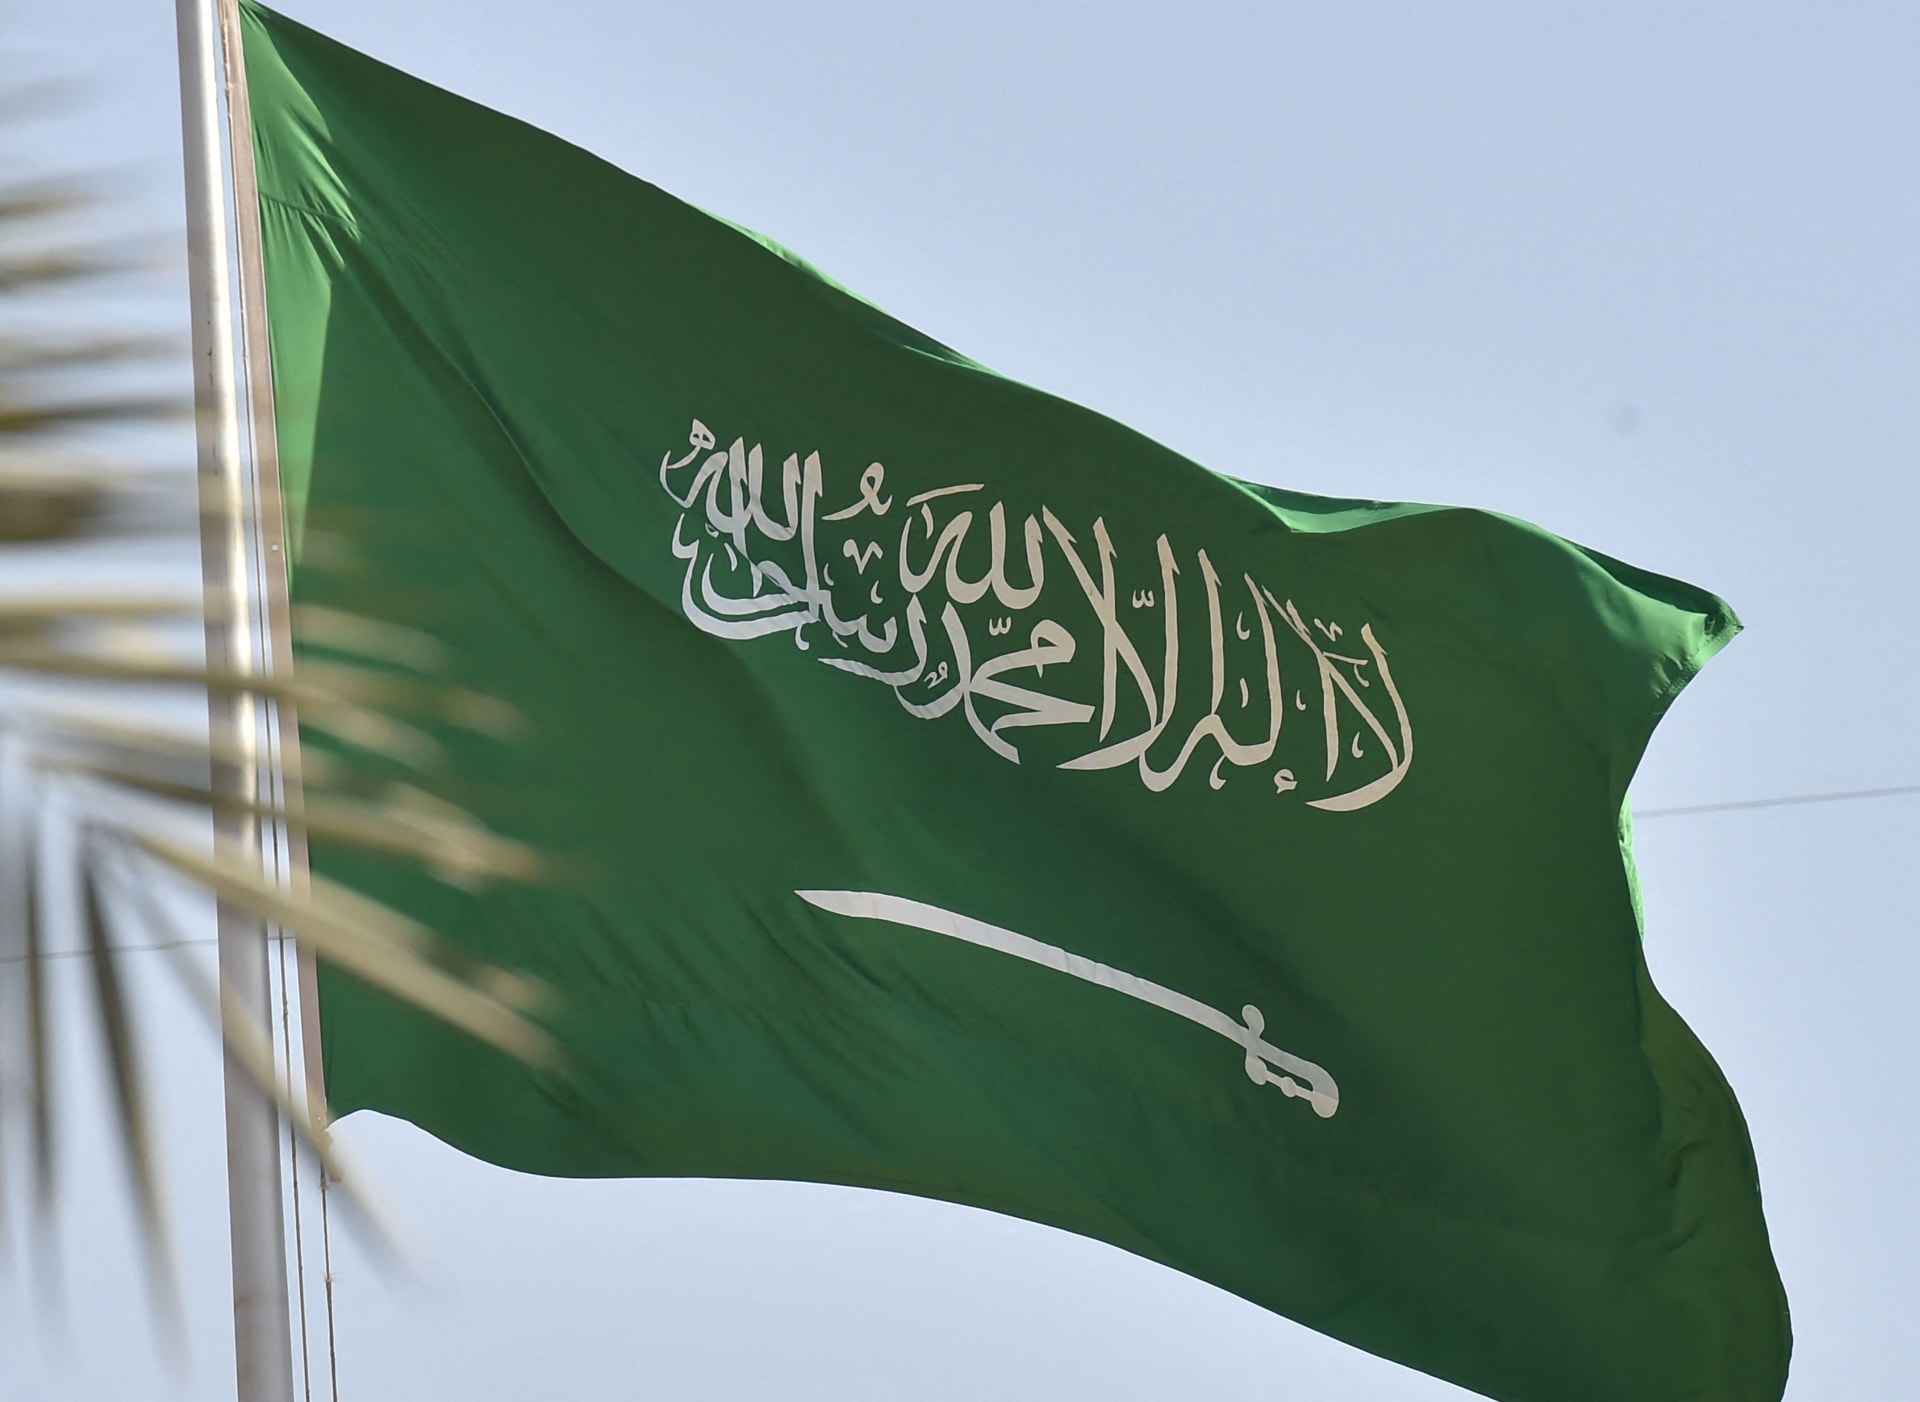 السعودية تترأس لجنة الأمم المتحدة المعنية بوضع المرأة رغم انتقادات منظمات حقوقية